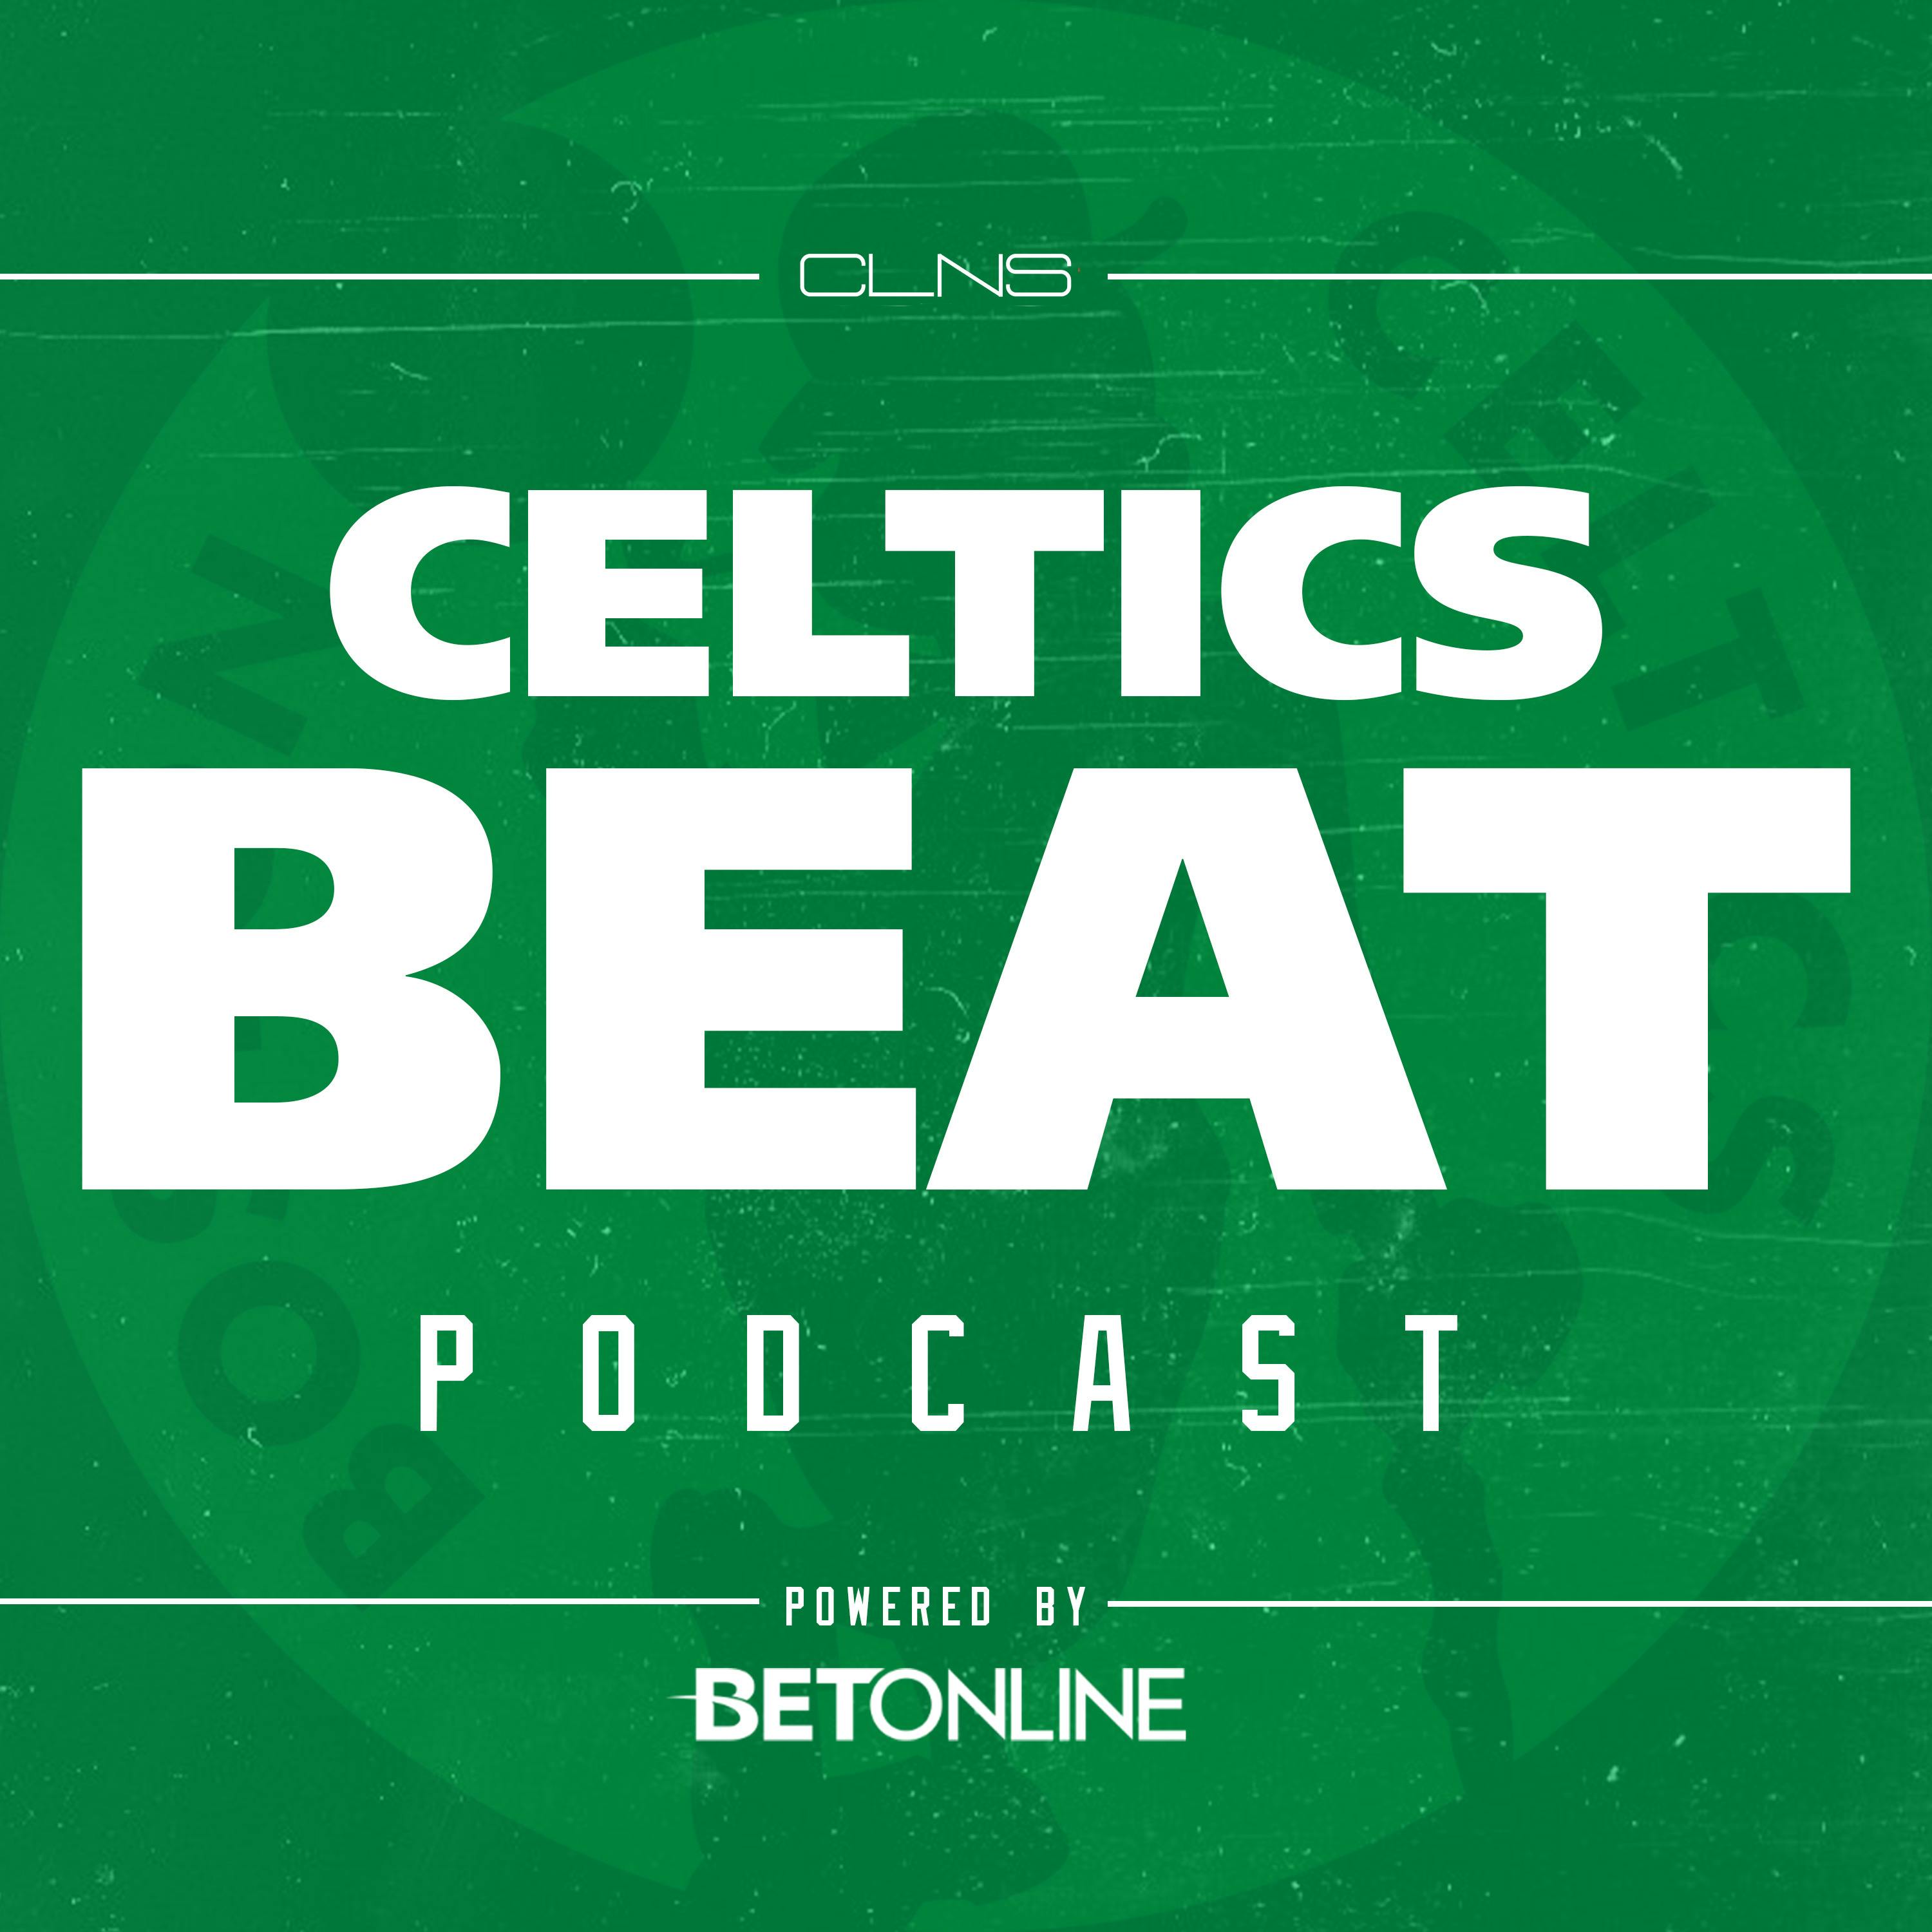 498: Realistic Celtics Trade Deadline Targets w/ Sean Deveney